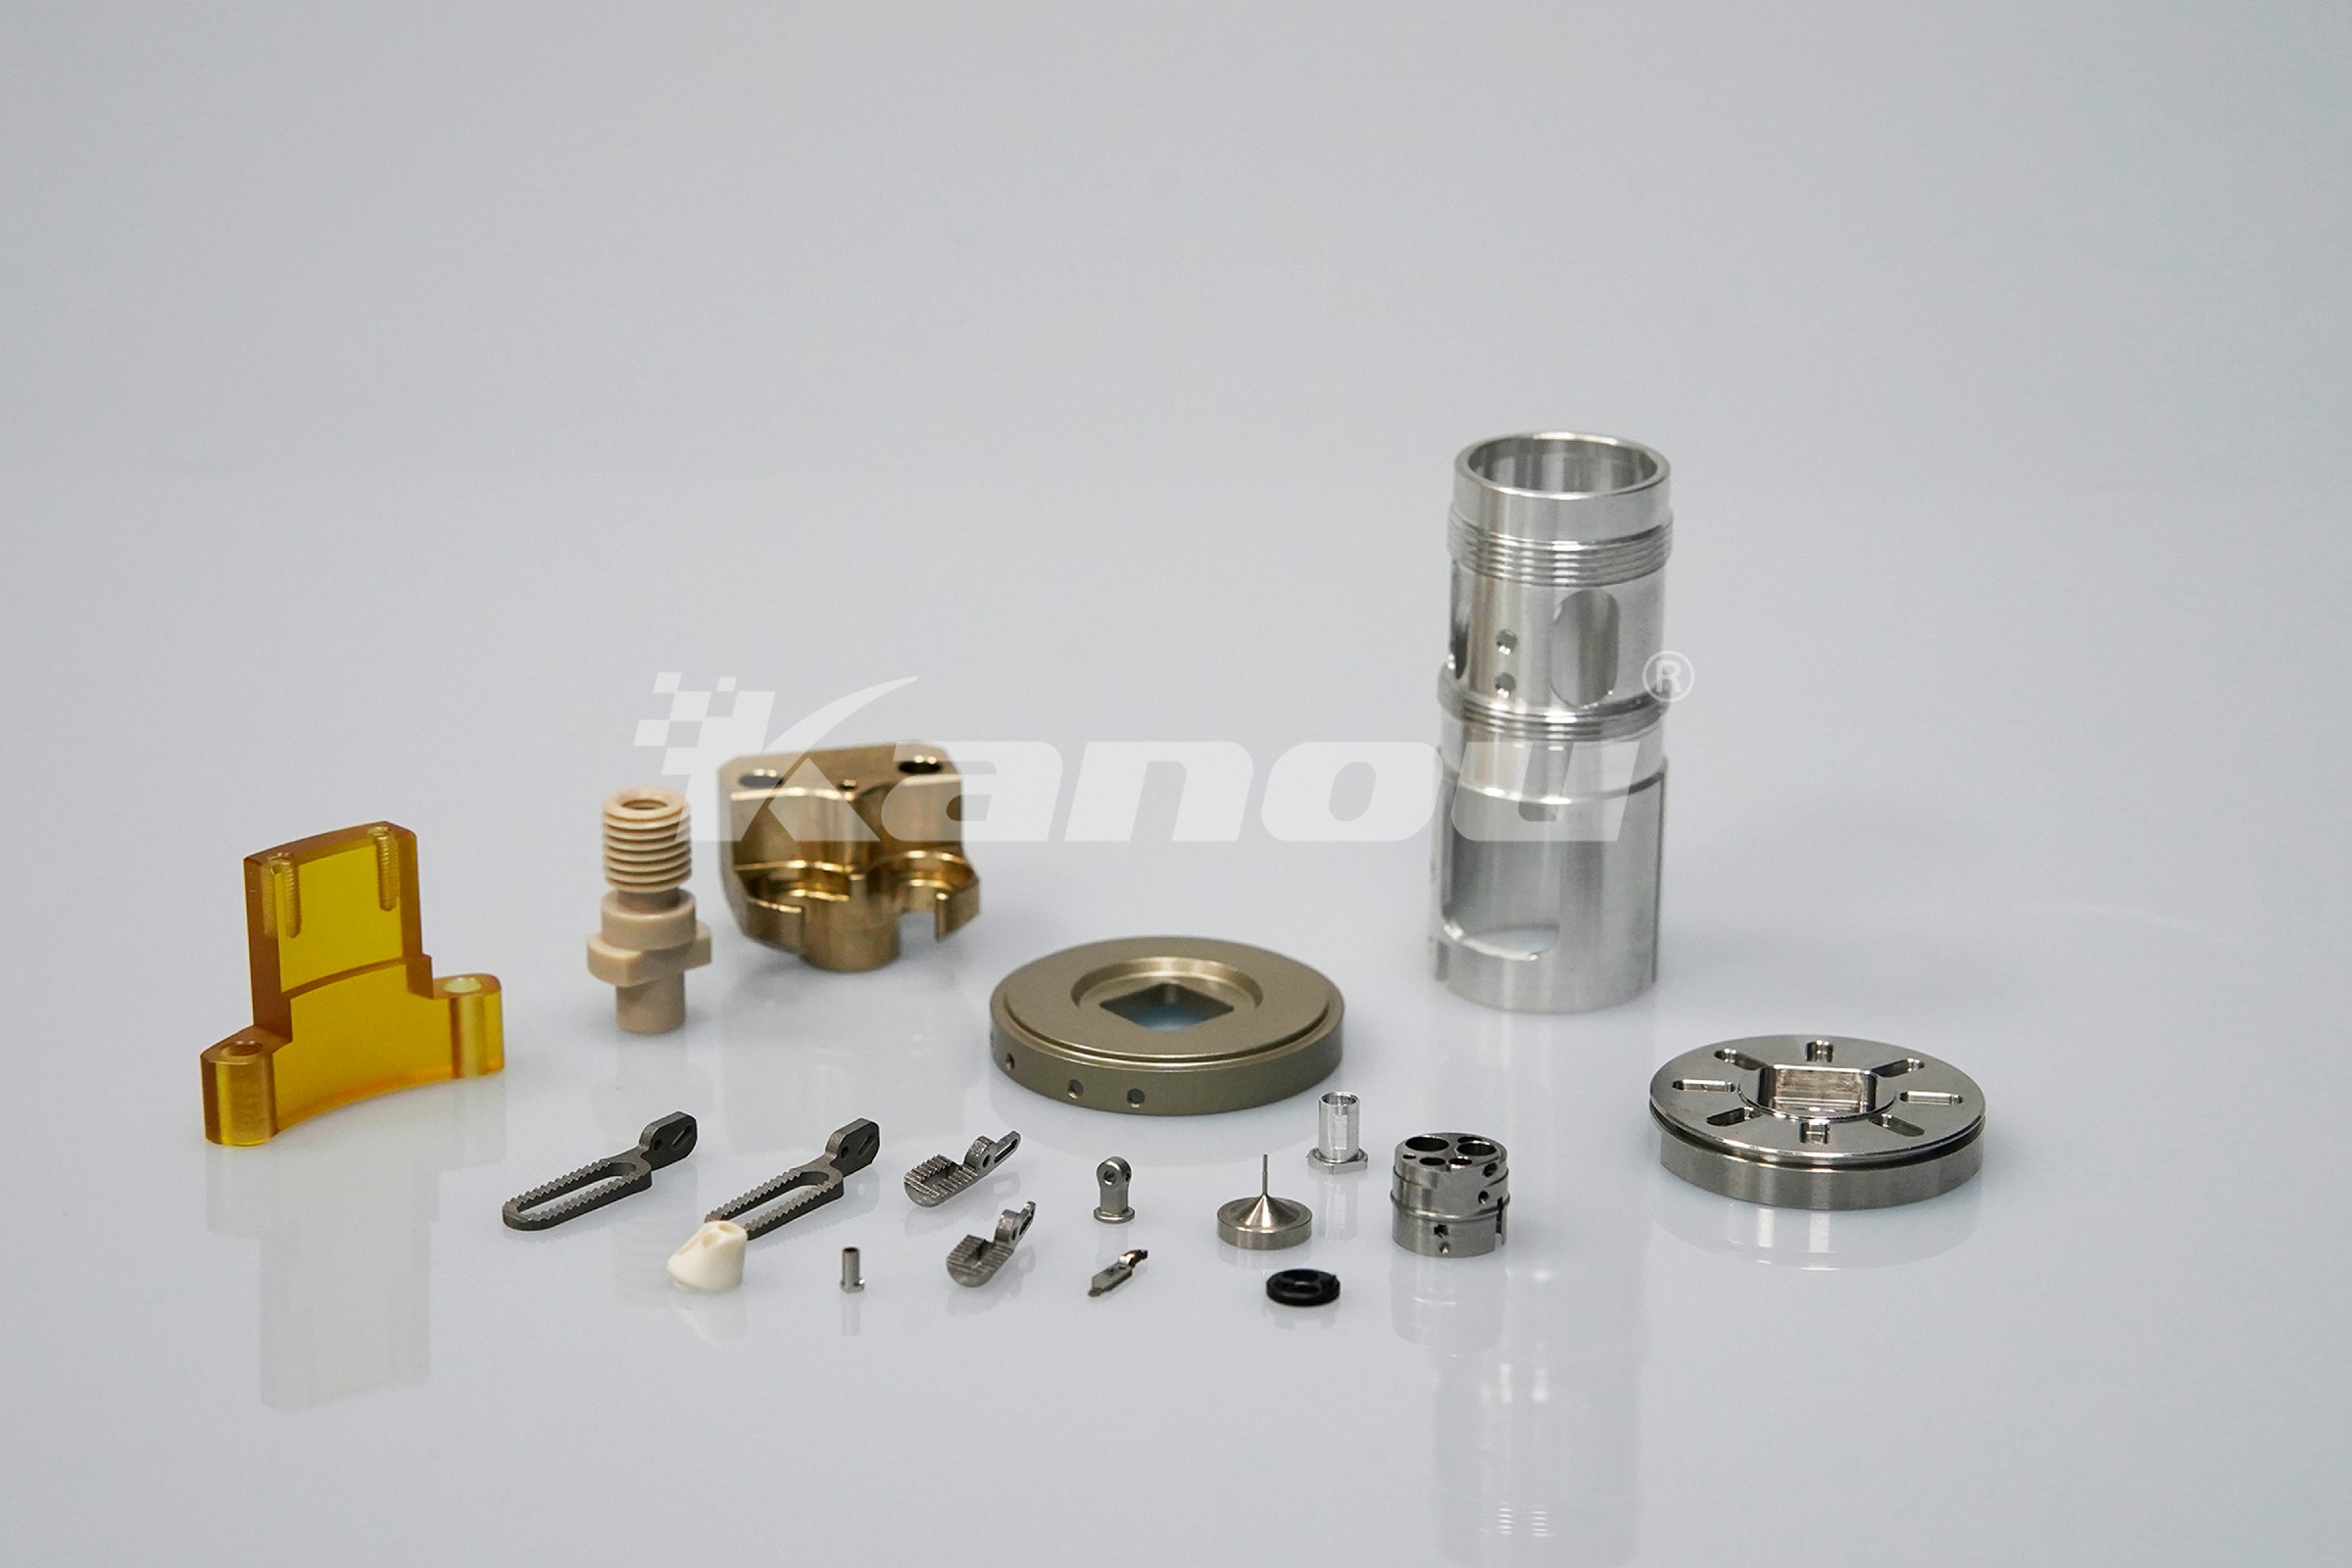 適切な CNC 加工材料の選び方 - KANOU